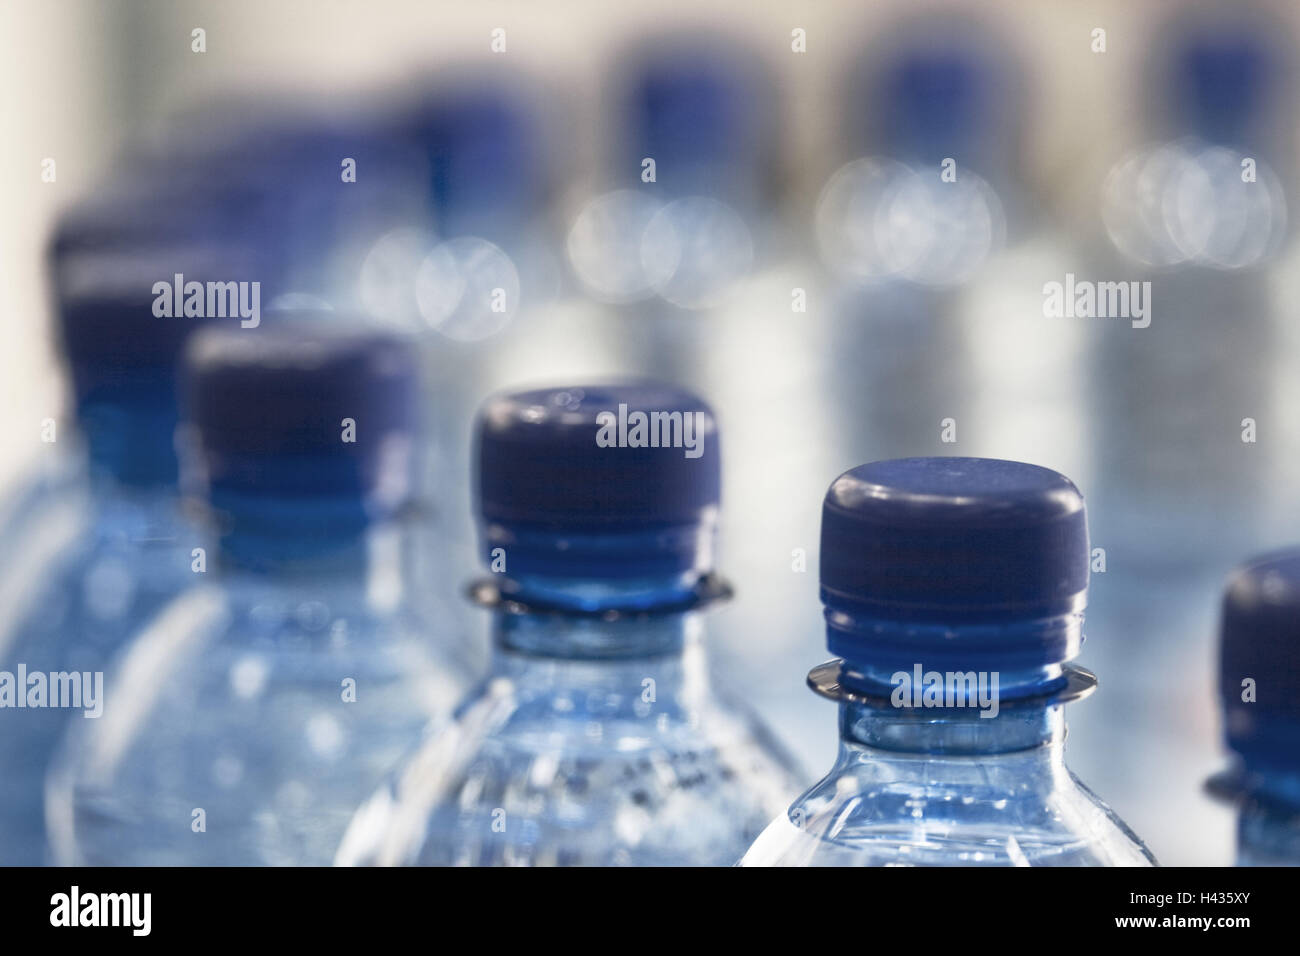 Agua mineral, botellas de plástico, sellos, detalle, desenfoque Foto de stock